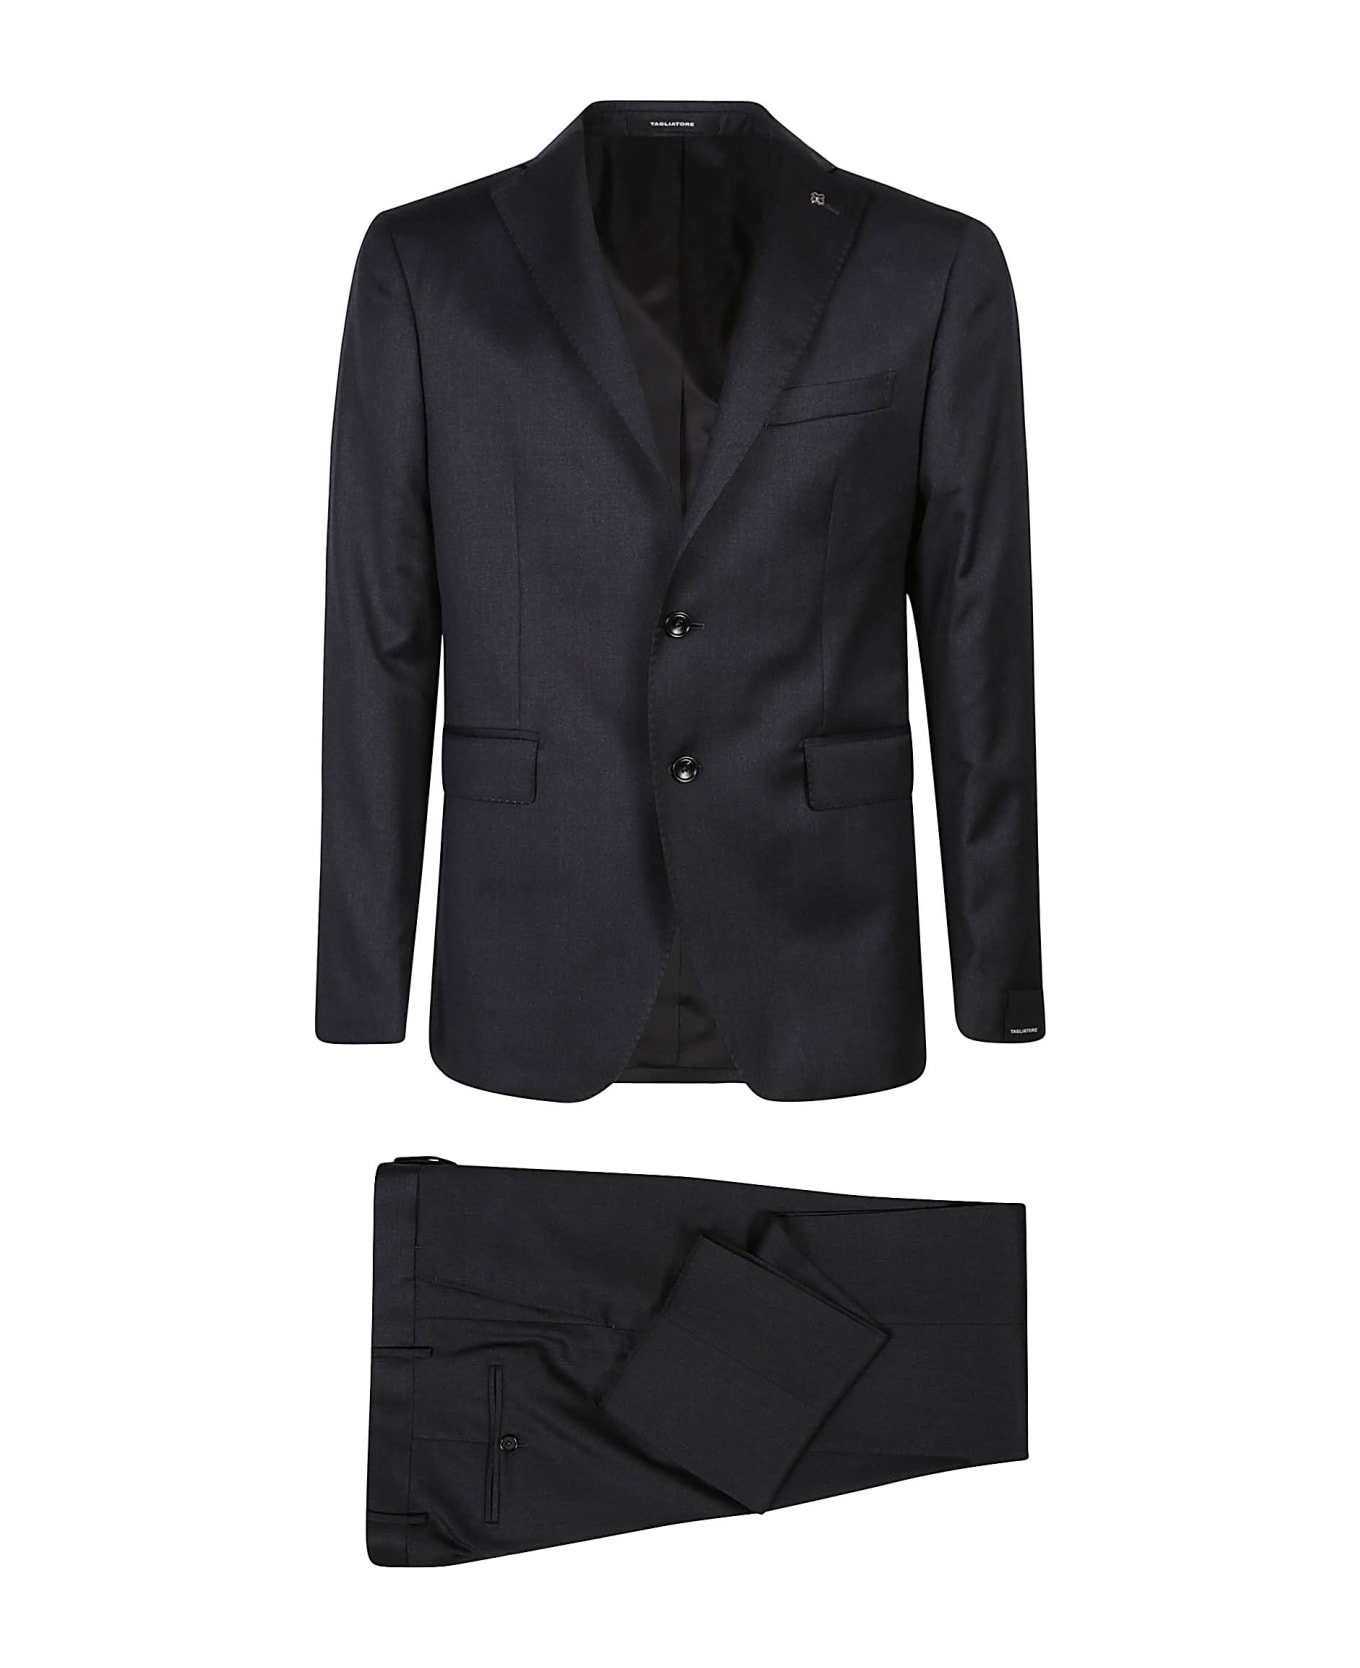 Tagliatore Suit - Antracite スーツ